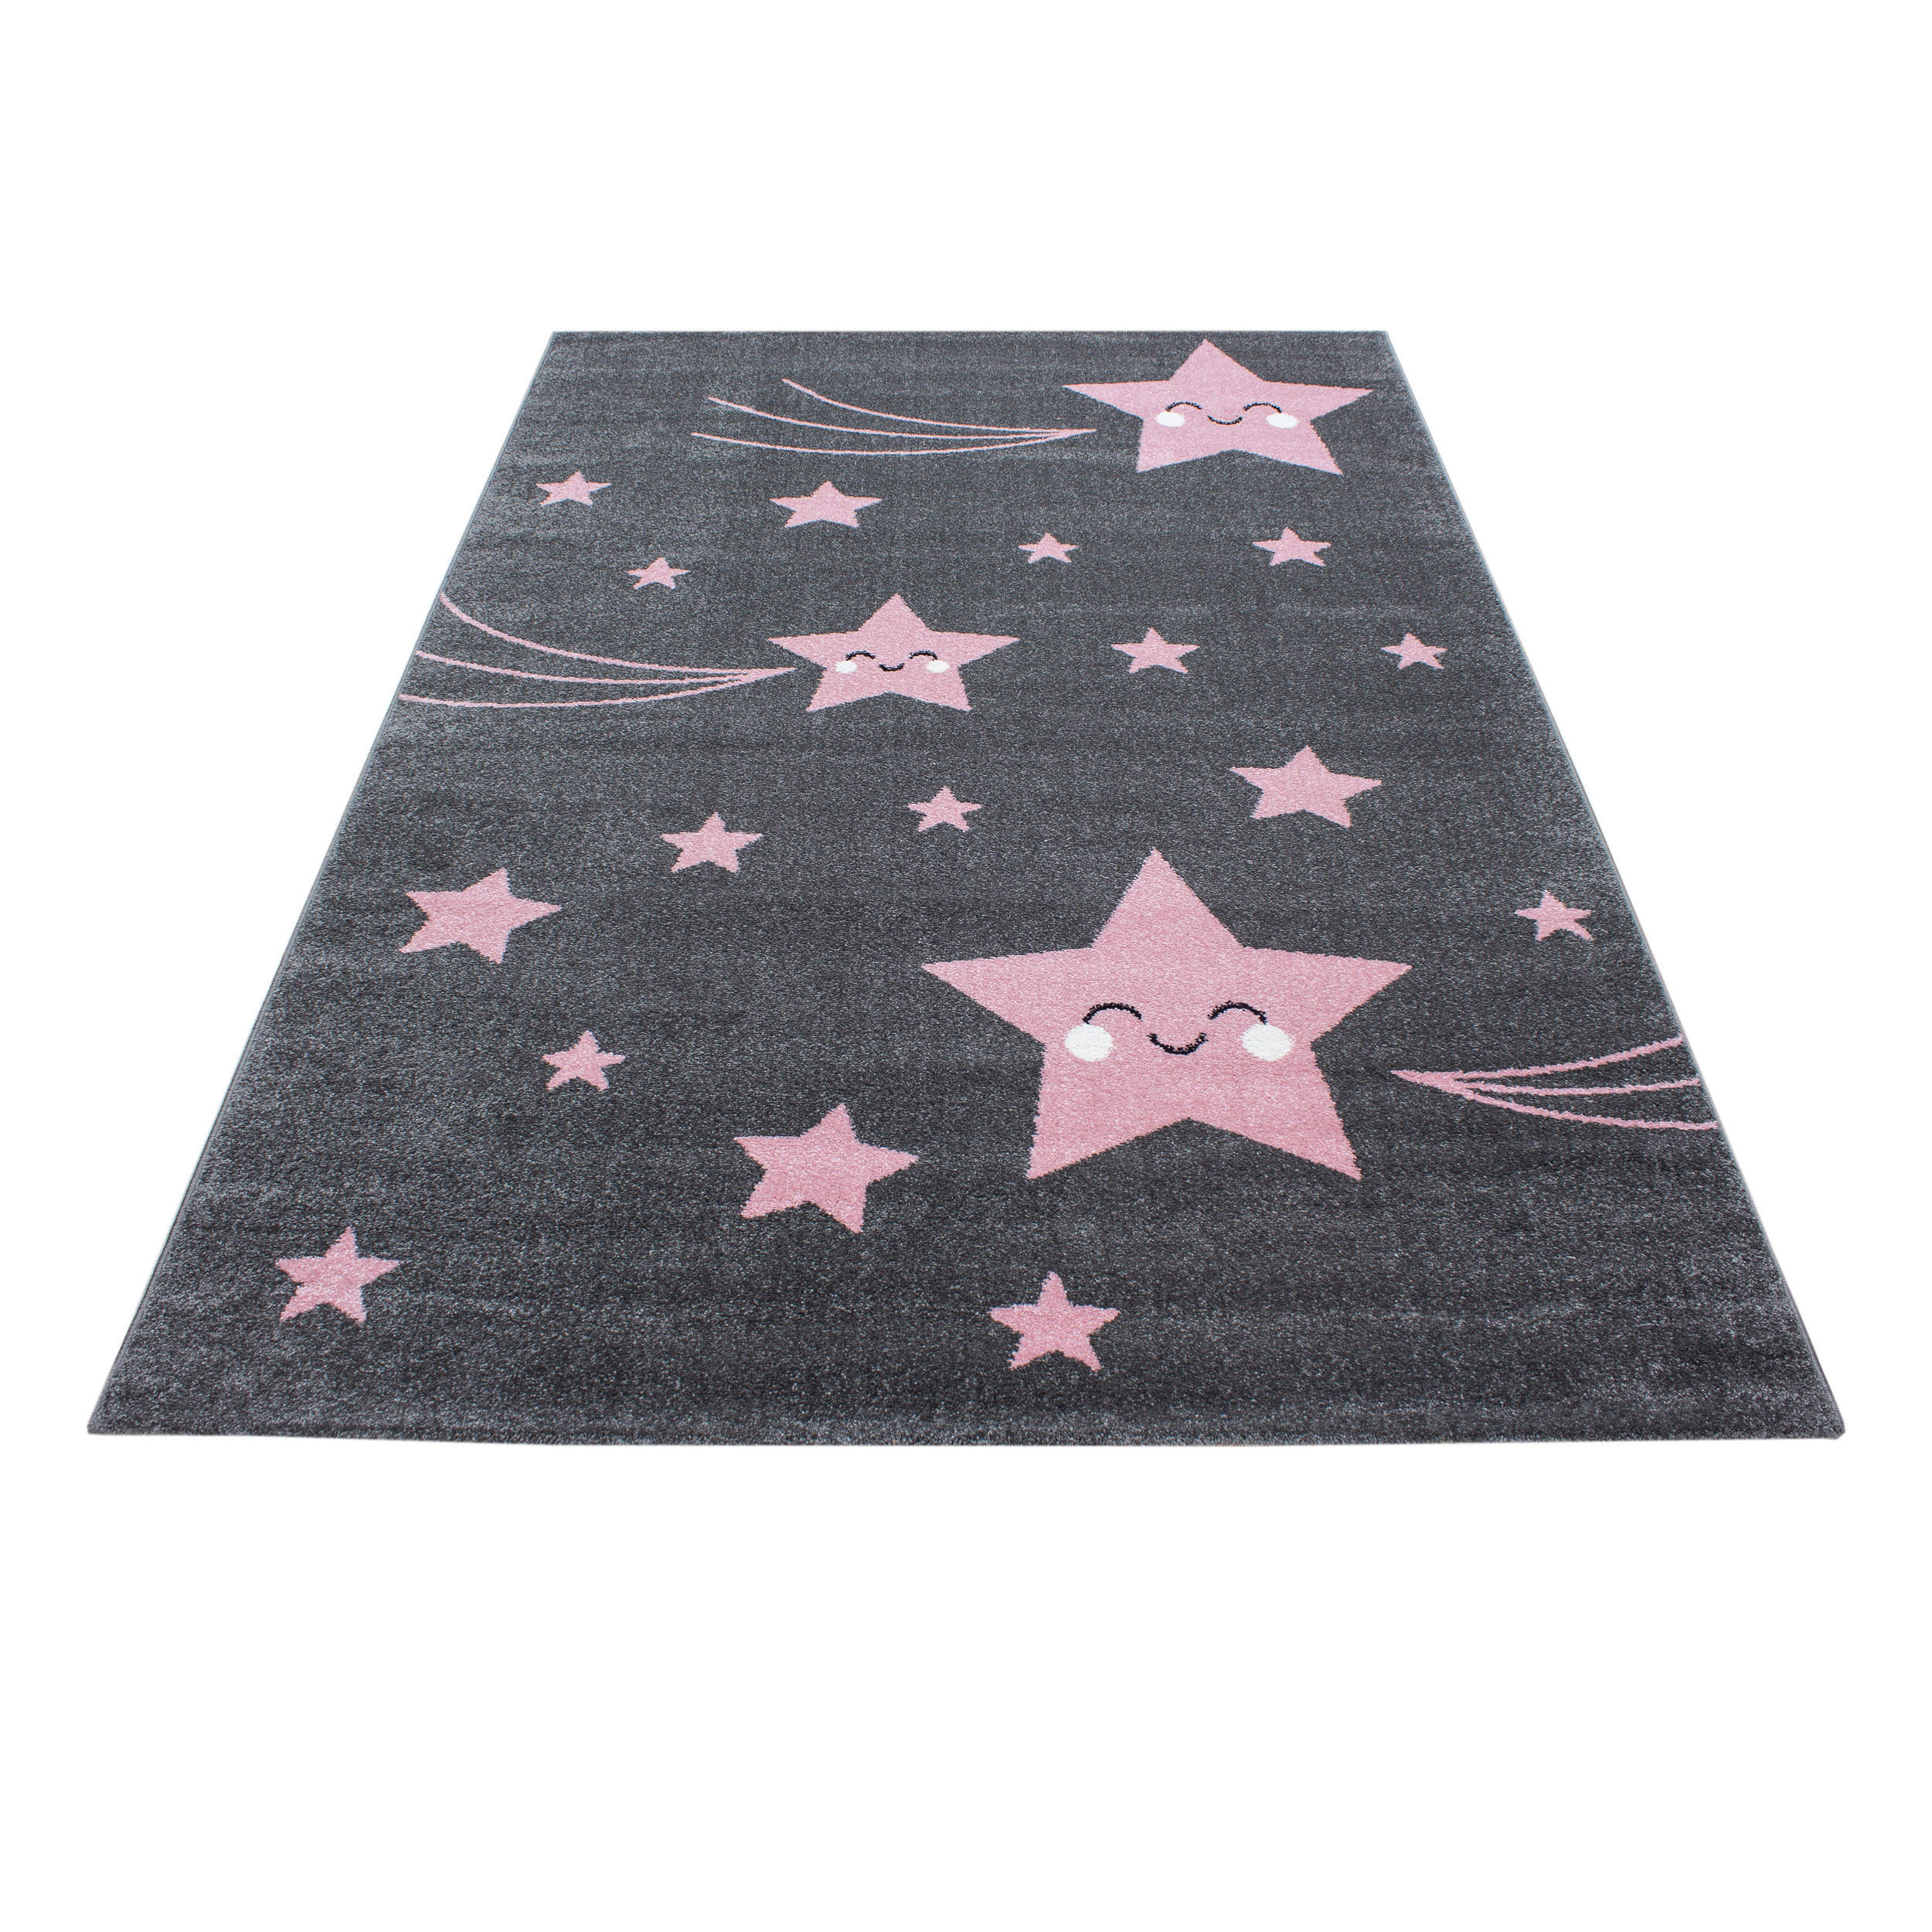 Ben′n′jen DĚTSKÝ KOBEREC, 160/230 cm, šedá, pink - šedá, pink - textil